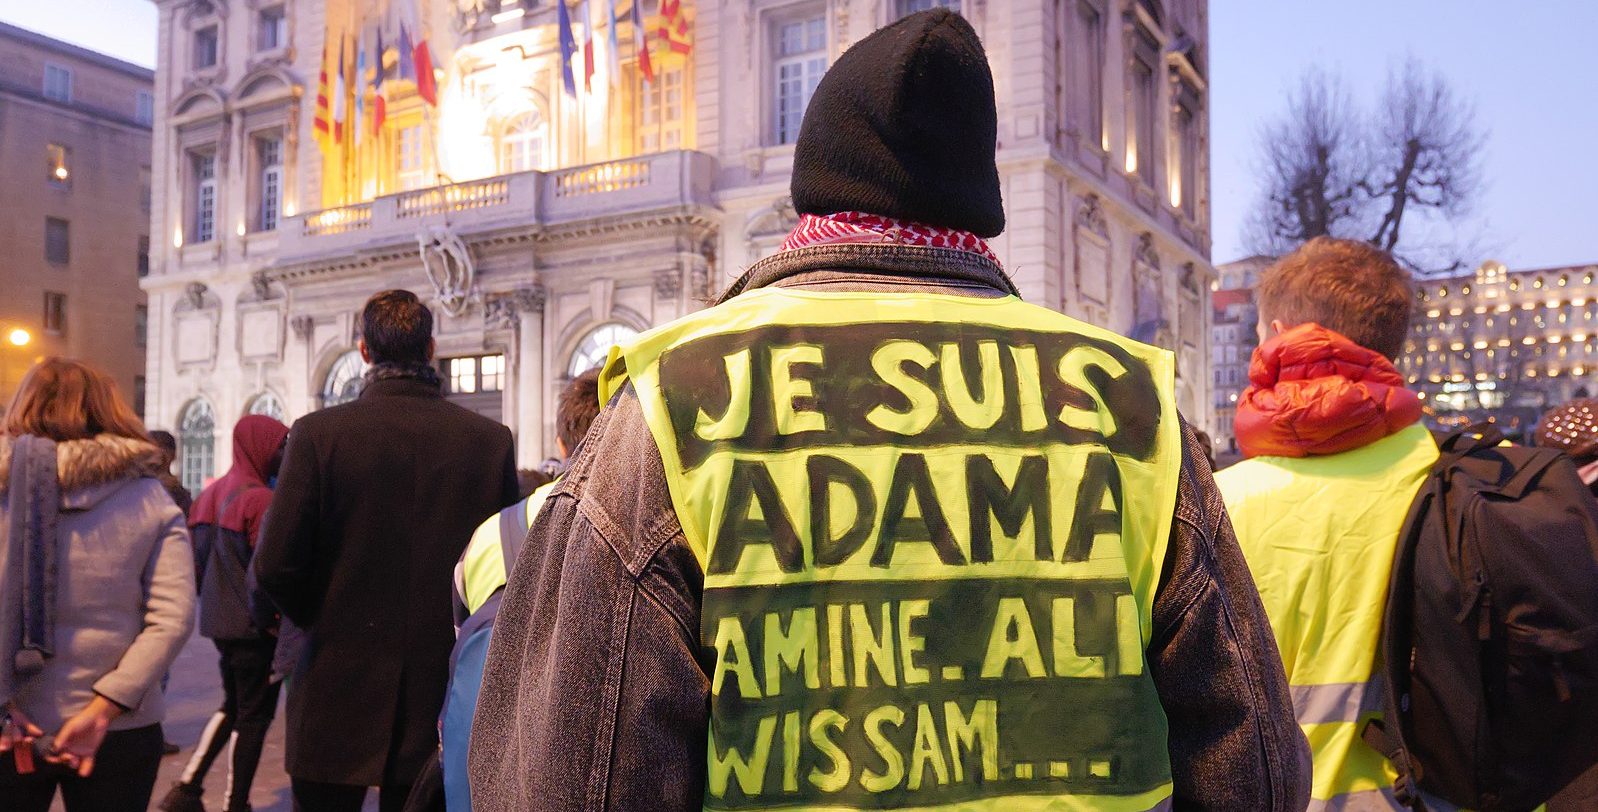 Je Suis Adama hi-vis on a protester in France